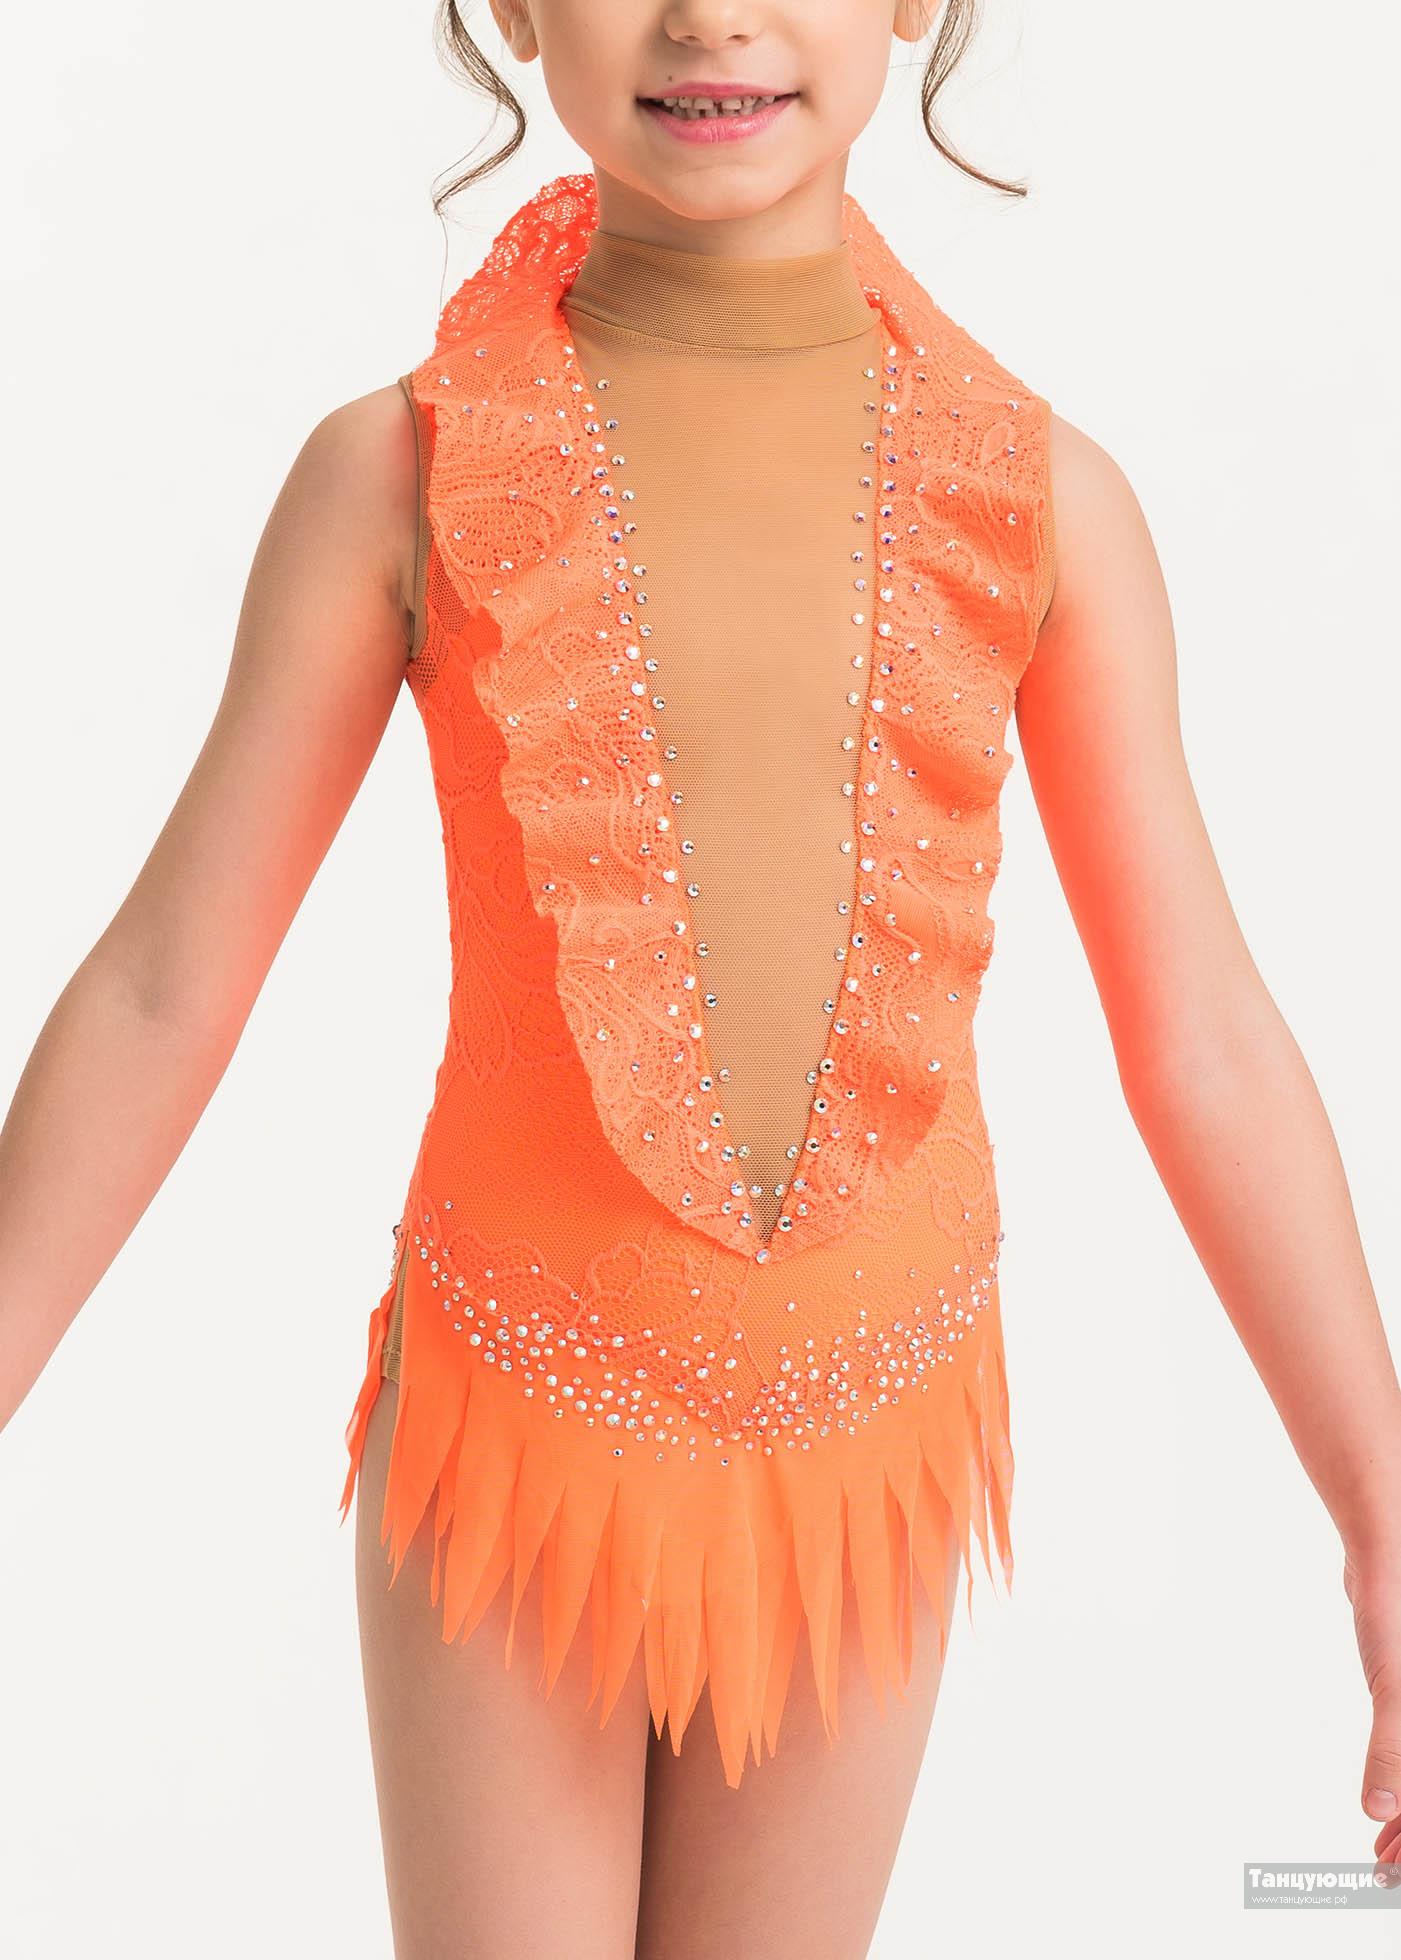 Купальник для художественной гимнастики Бон Вояж оранжевый — купить в интернет-магазине «Танцующие»